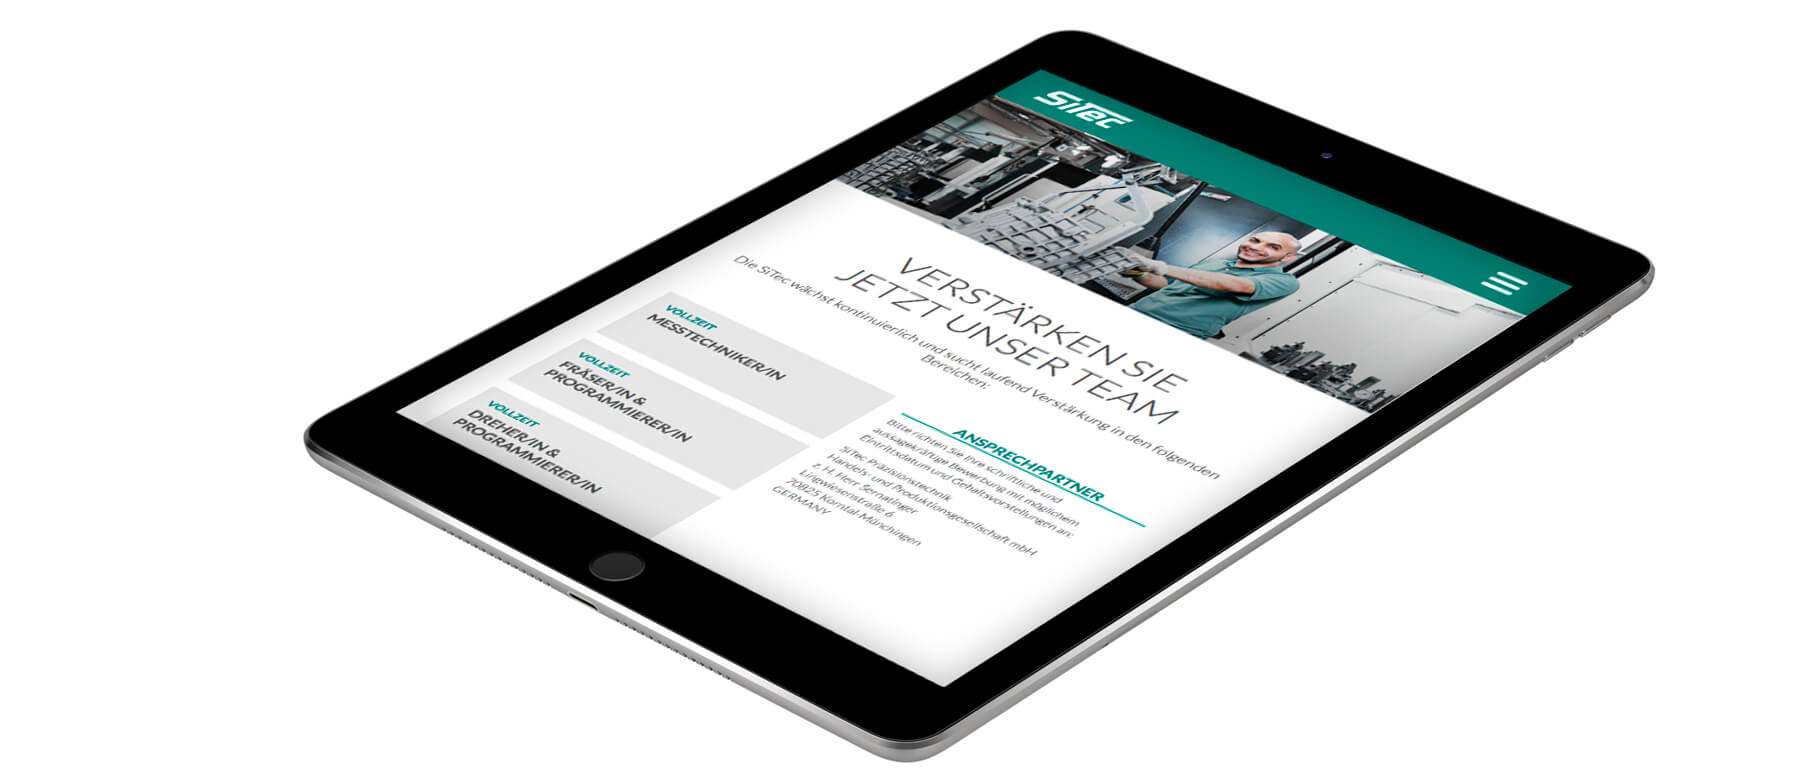 Mockup der SiTec-Website dargestellt in einem iPad, Übersicht der Job-Angebote